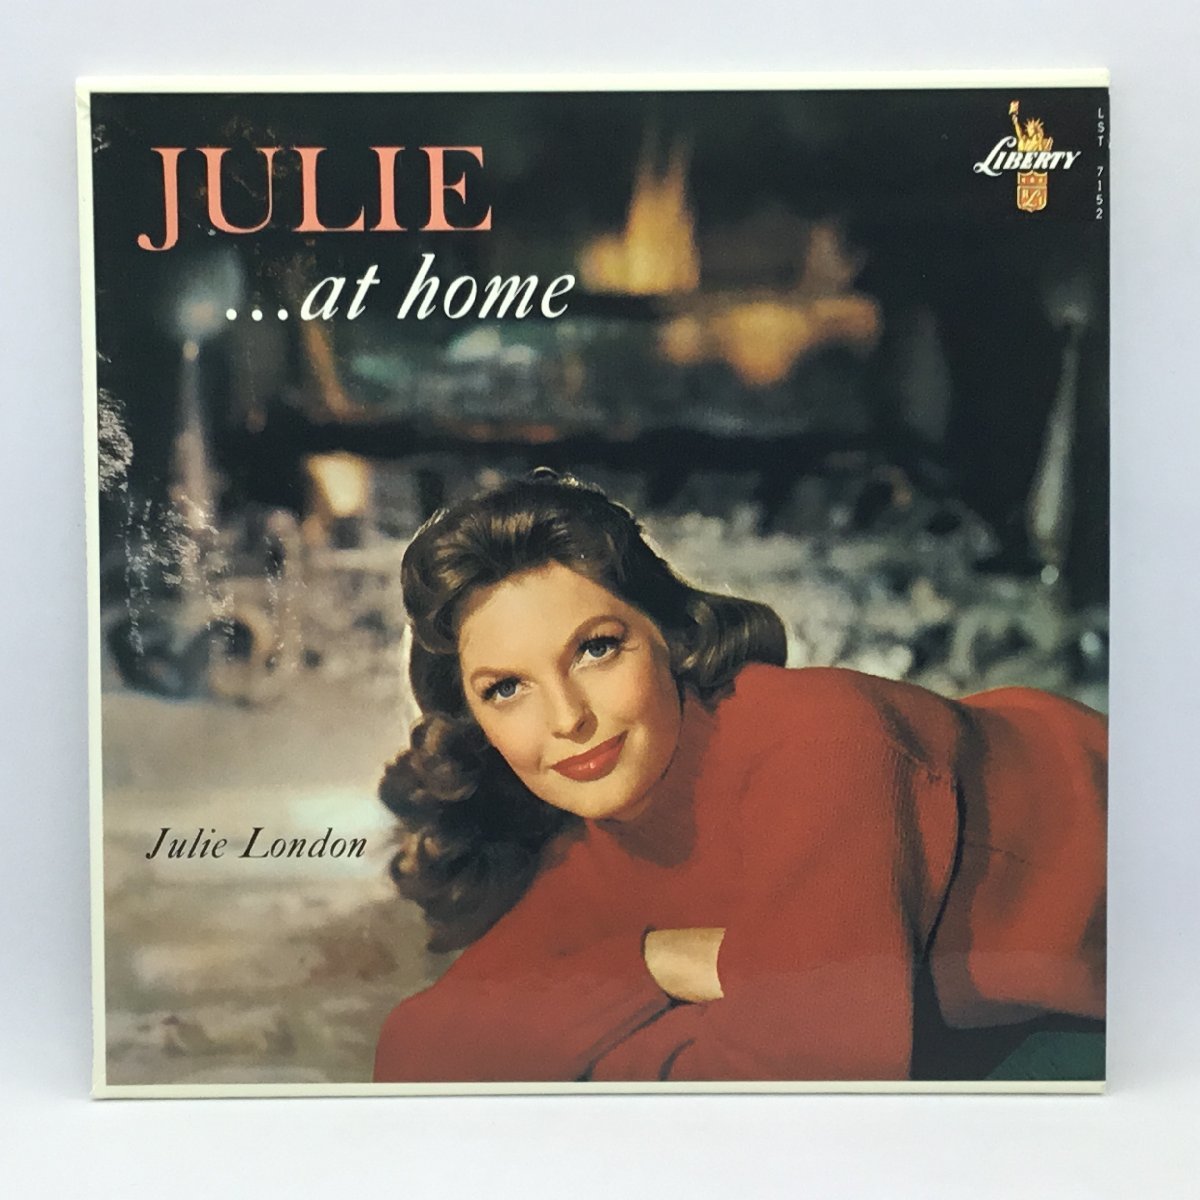 ジュリー・ロンドン / ジュリー・アット・ホーム (CD) TOCJ-9671 JULIE LONDON / JULIE ...AT HOME_画像3